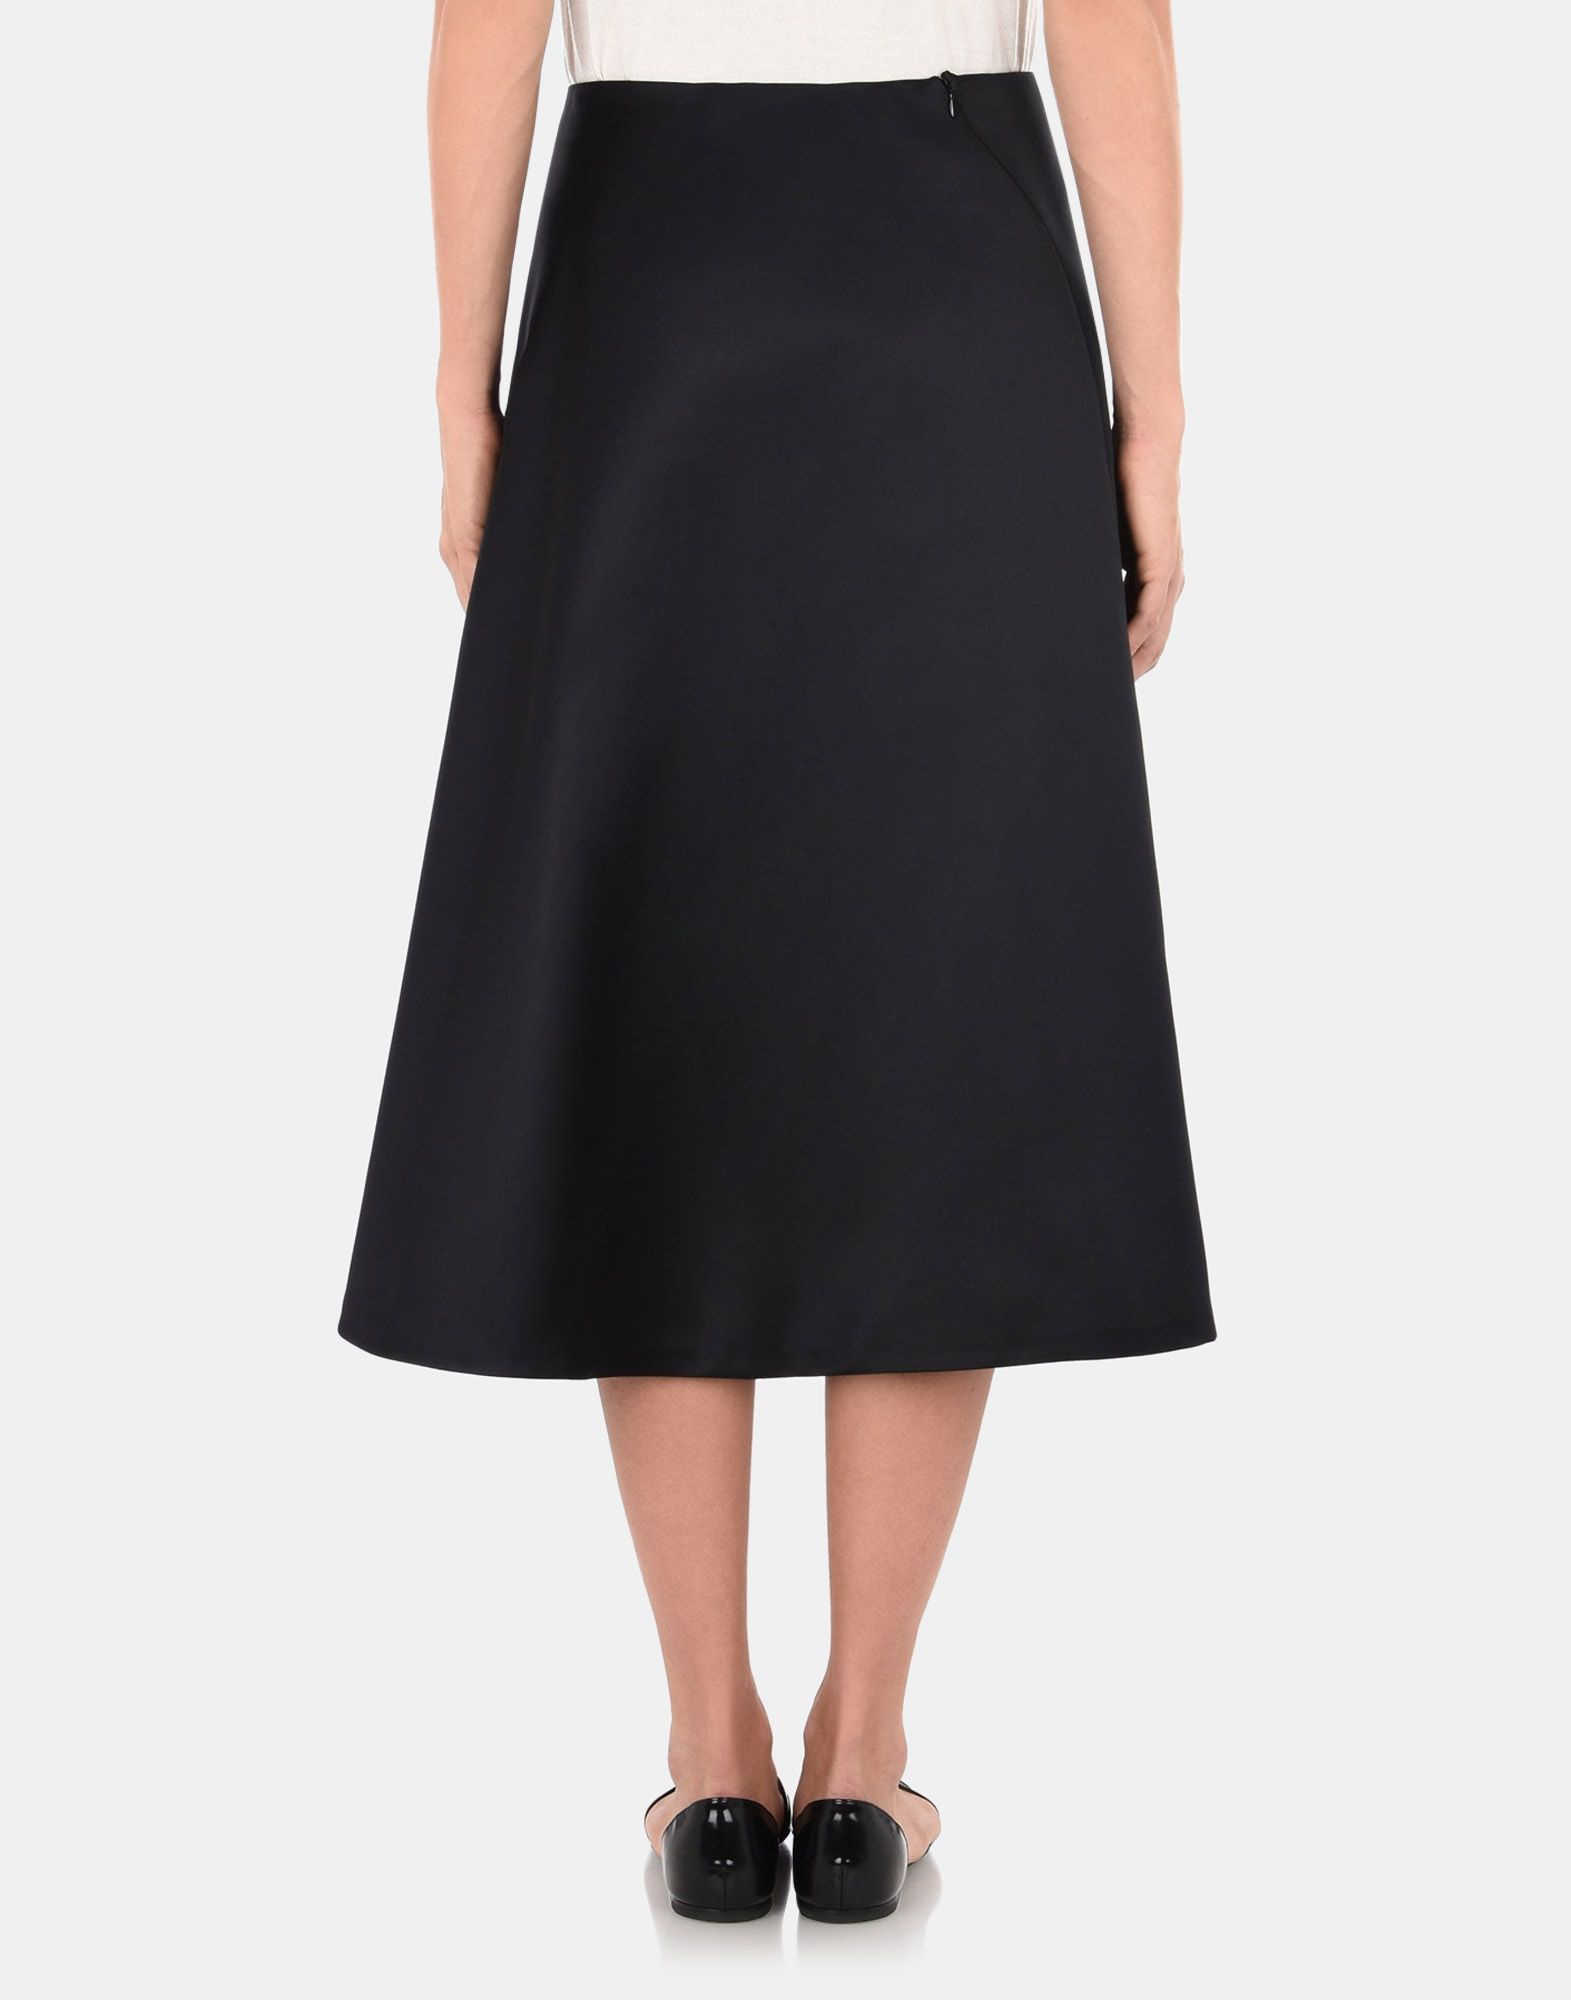 3/4 length skirt Women - Skirts Women on Jil Sander Online Store